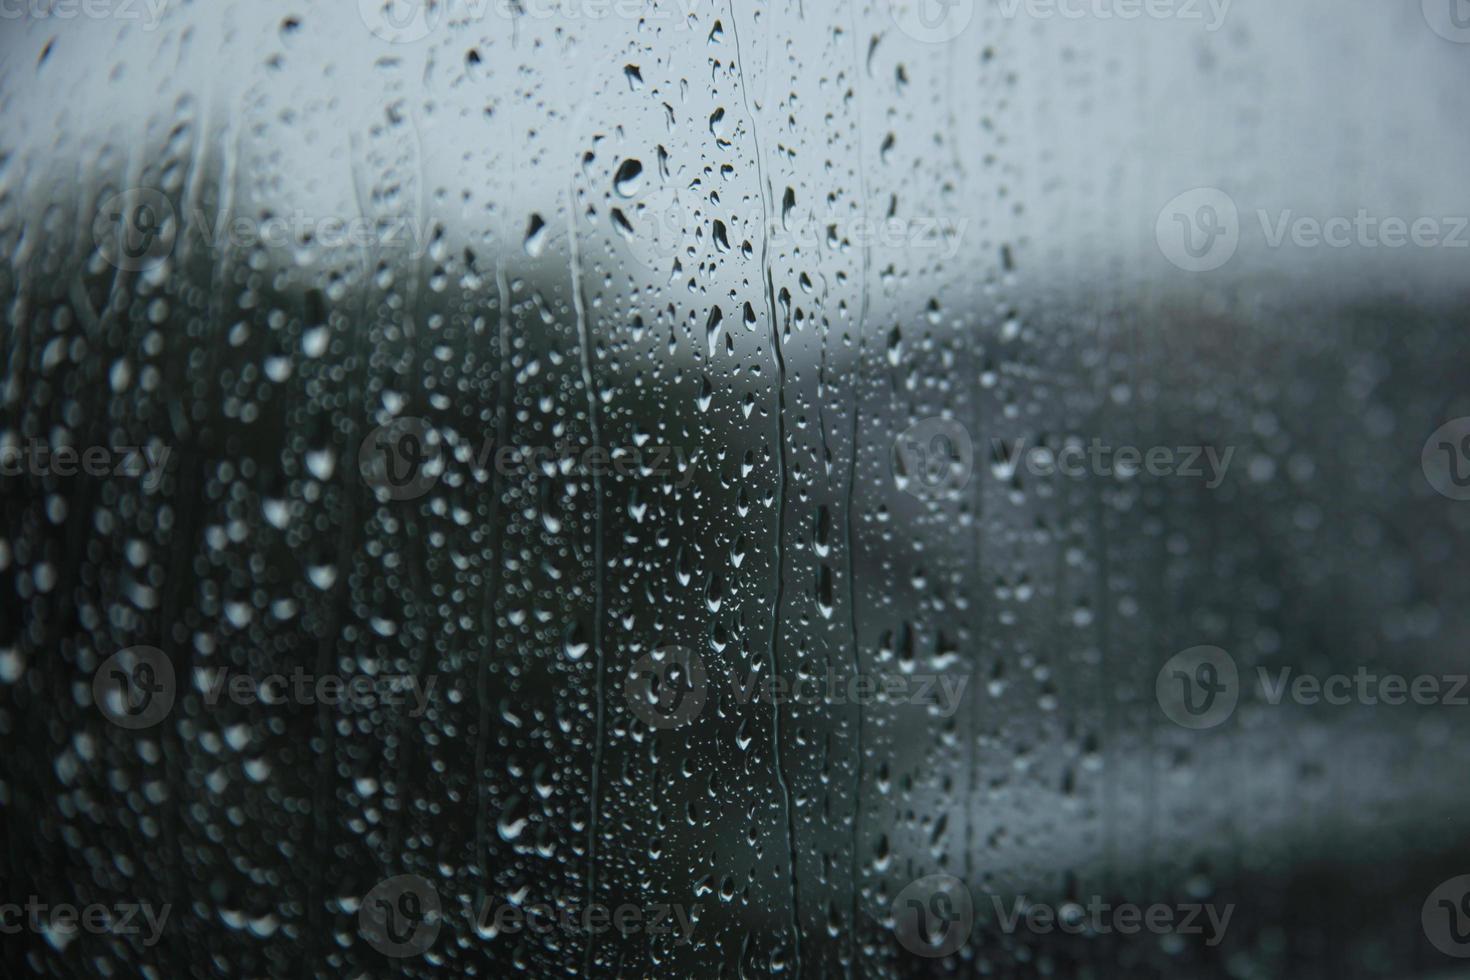 gouttes de pluie floues sur la surface des vitres avec fond nuageux. concept de fond dramatique photo